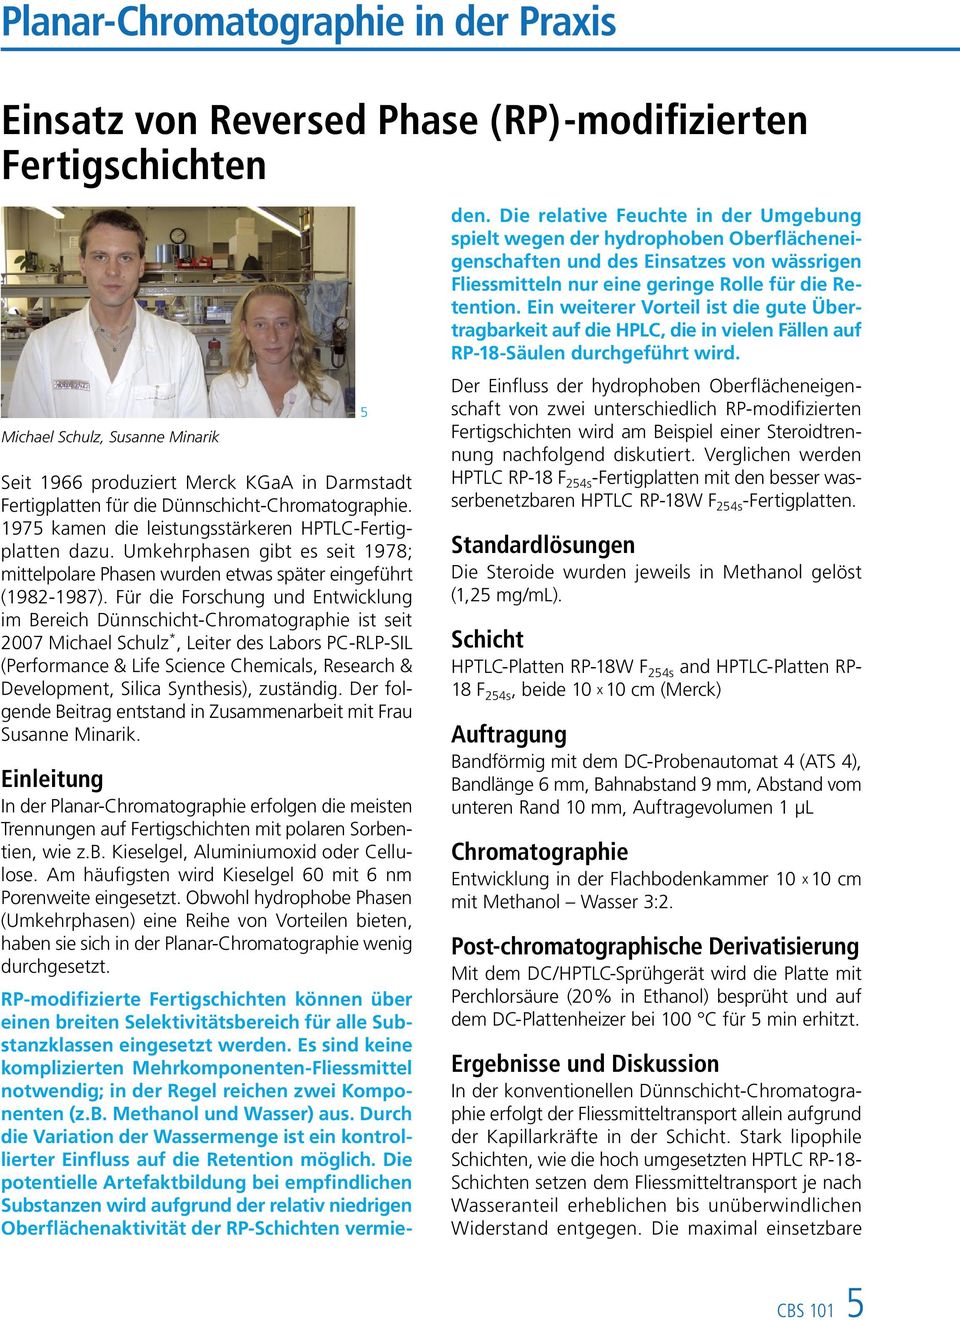 Für die Forschung und Entwicklung im Bereich Dünnschicht-Chromatographie ist seit 2007 Michael Schulz *, Leiter des Labors PC-RLP-SIL (Performance & Life Science Chemicals, Research & Development,